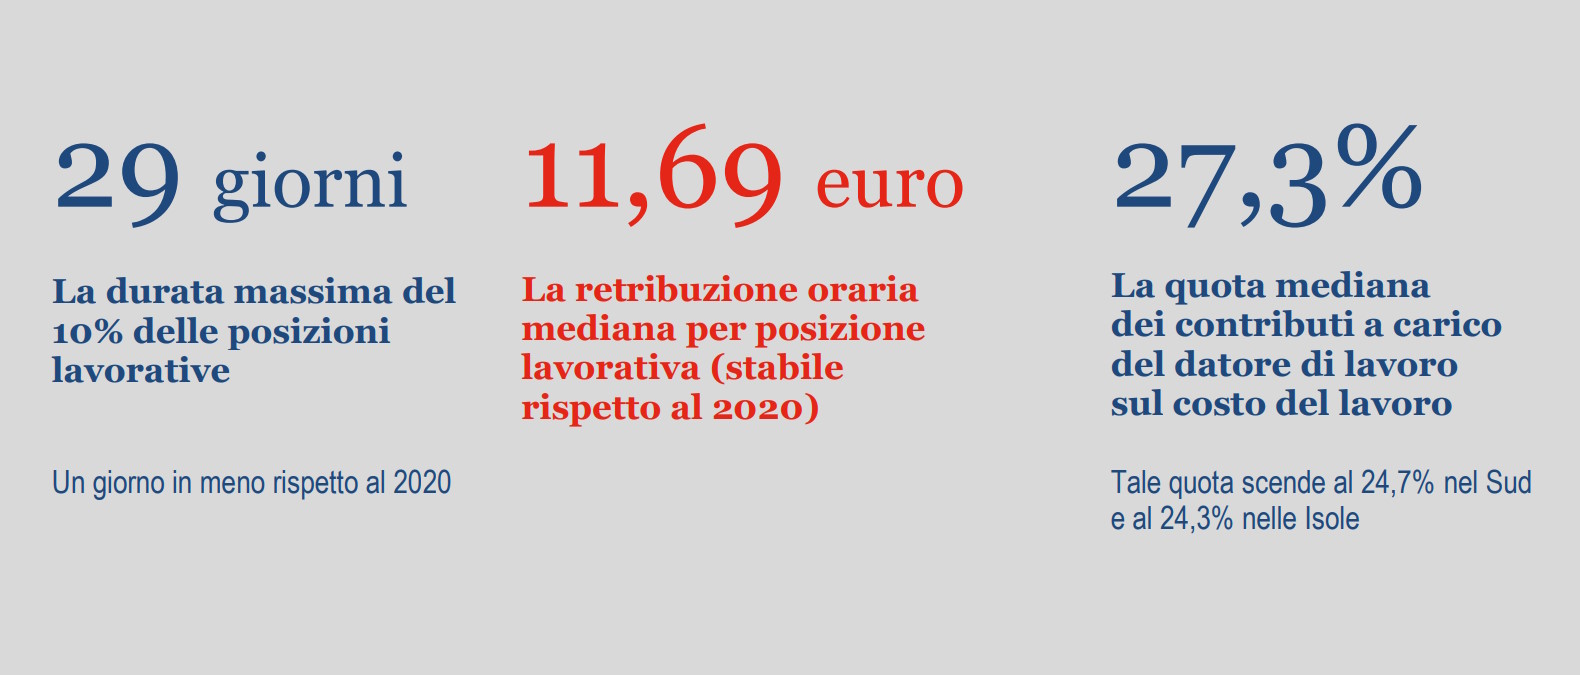 Istat: i dati su occupazione, retribuzioni e costo del lavoro nel settore privato per l'anno 2021